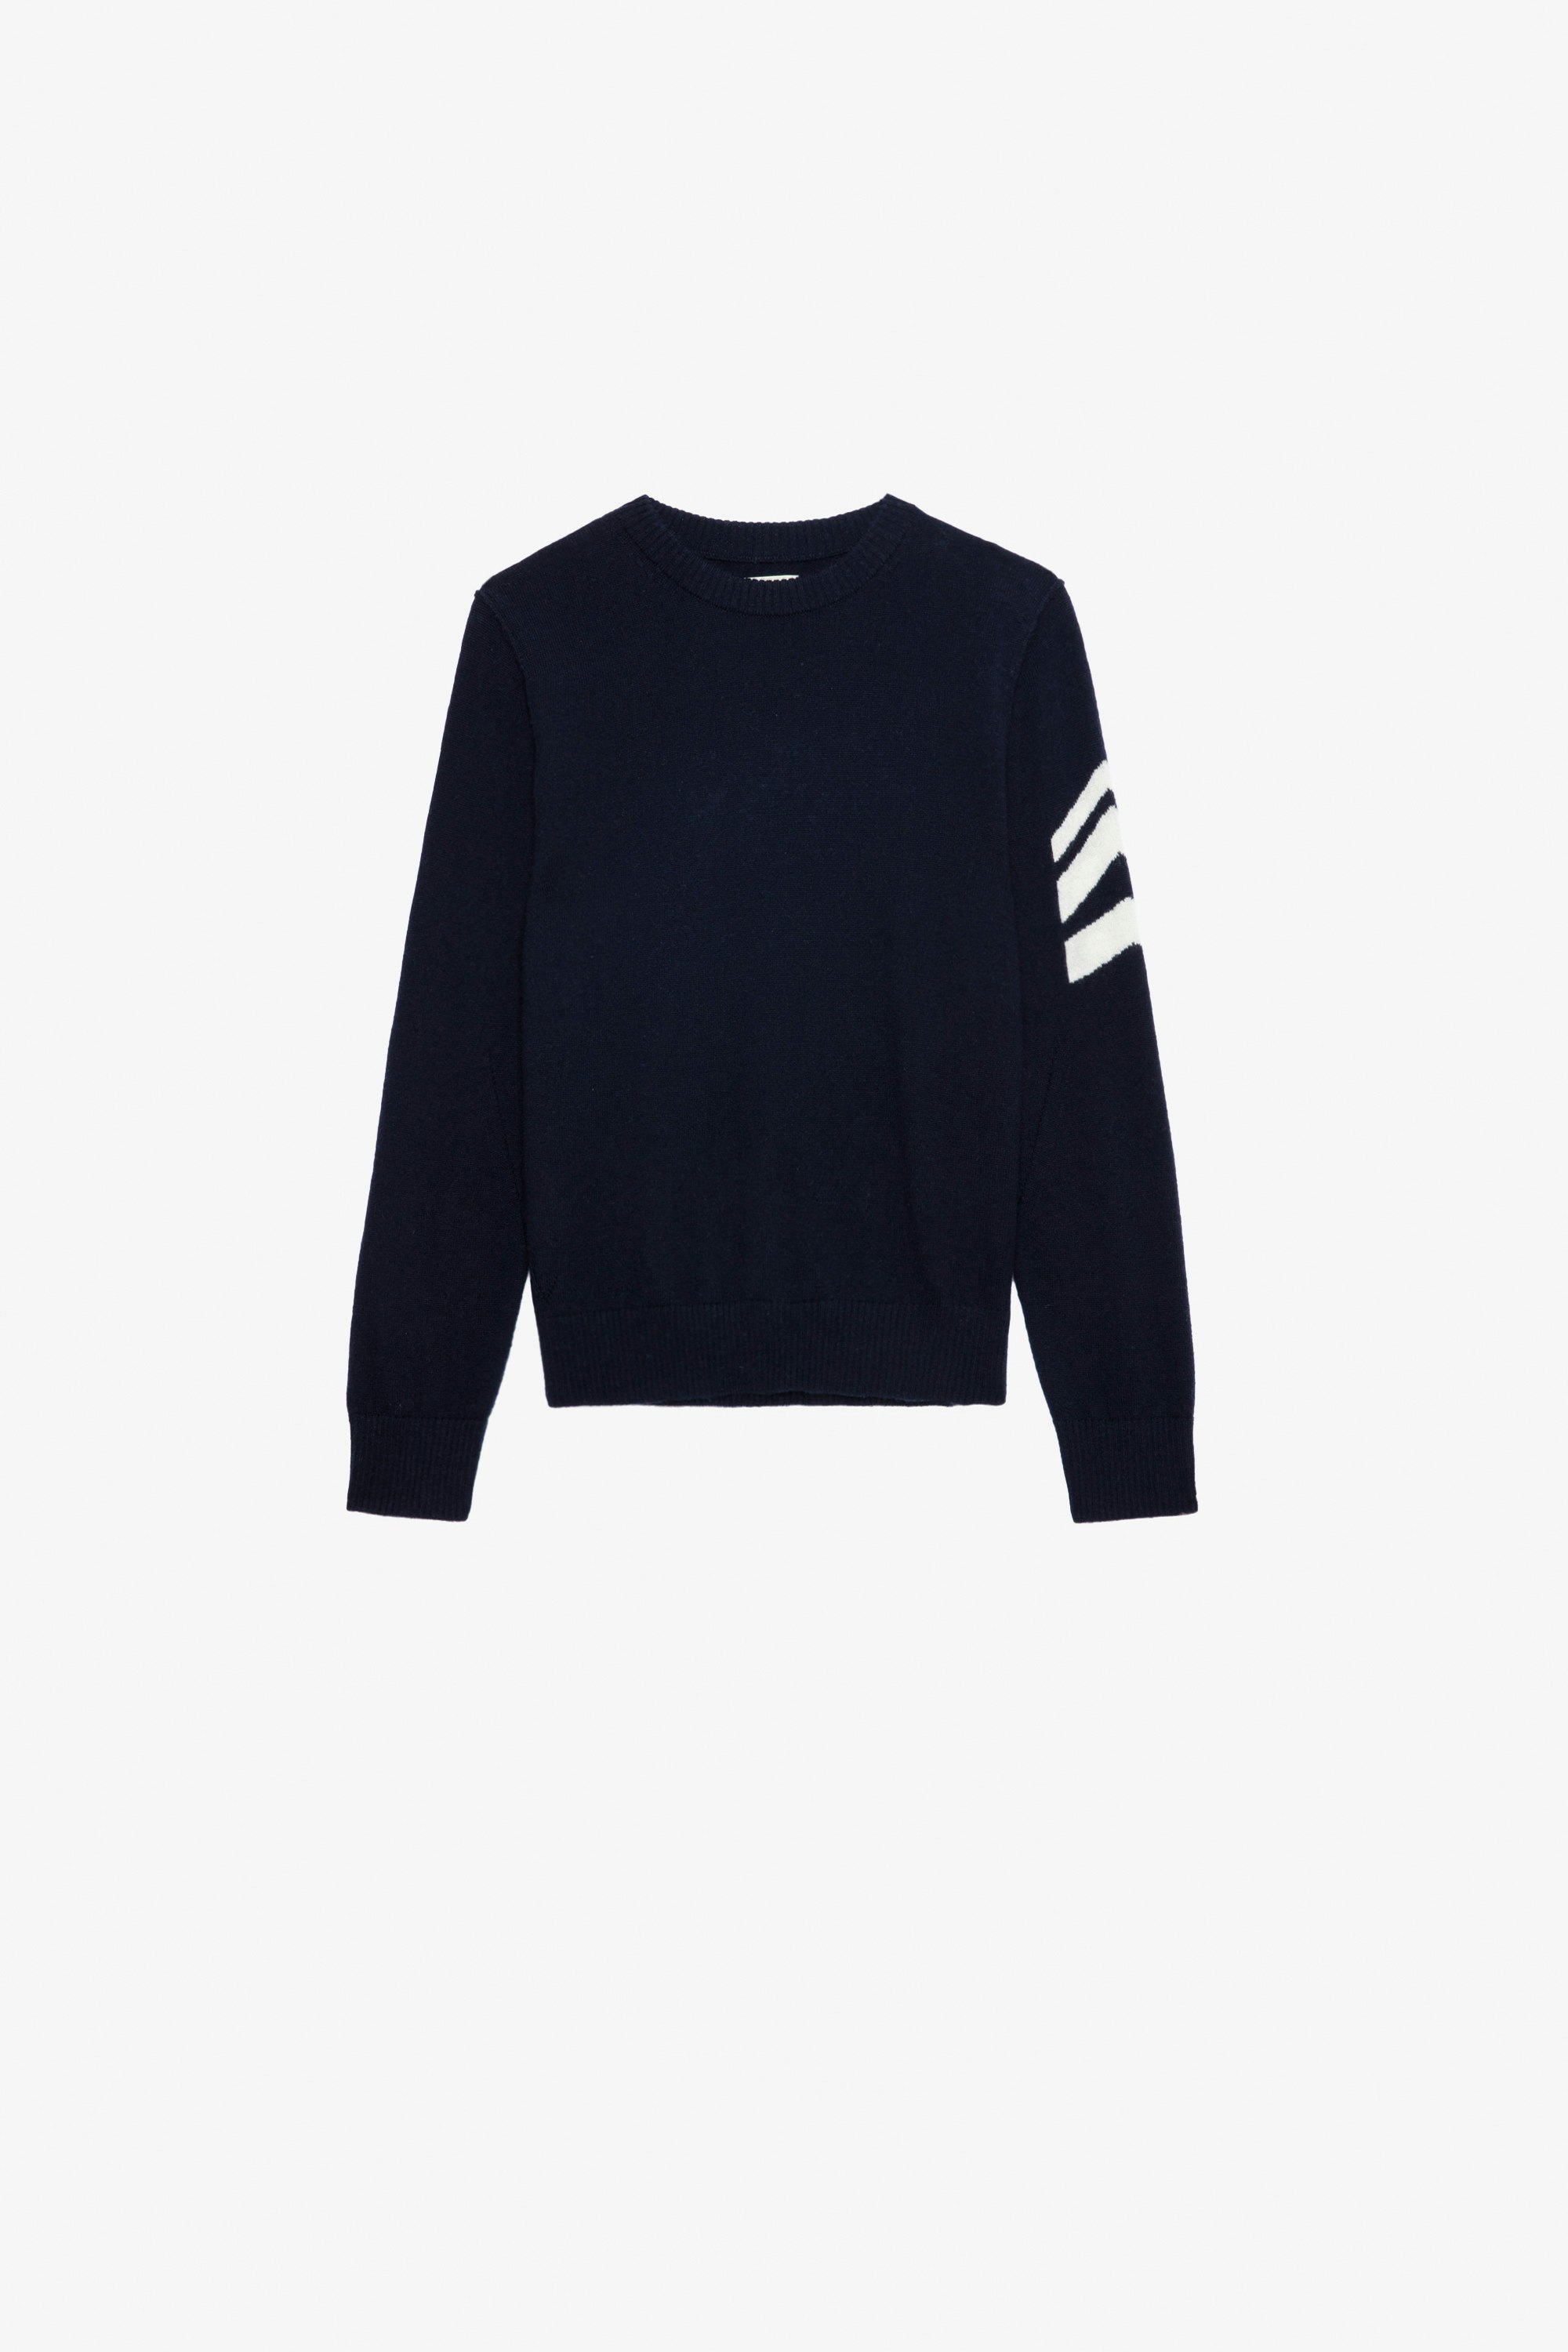 Chris Boys’ Jumper Boys’ navy blue knit jumper with “Dreamer” slogan.